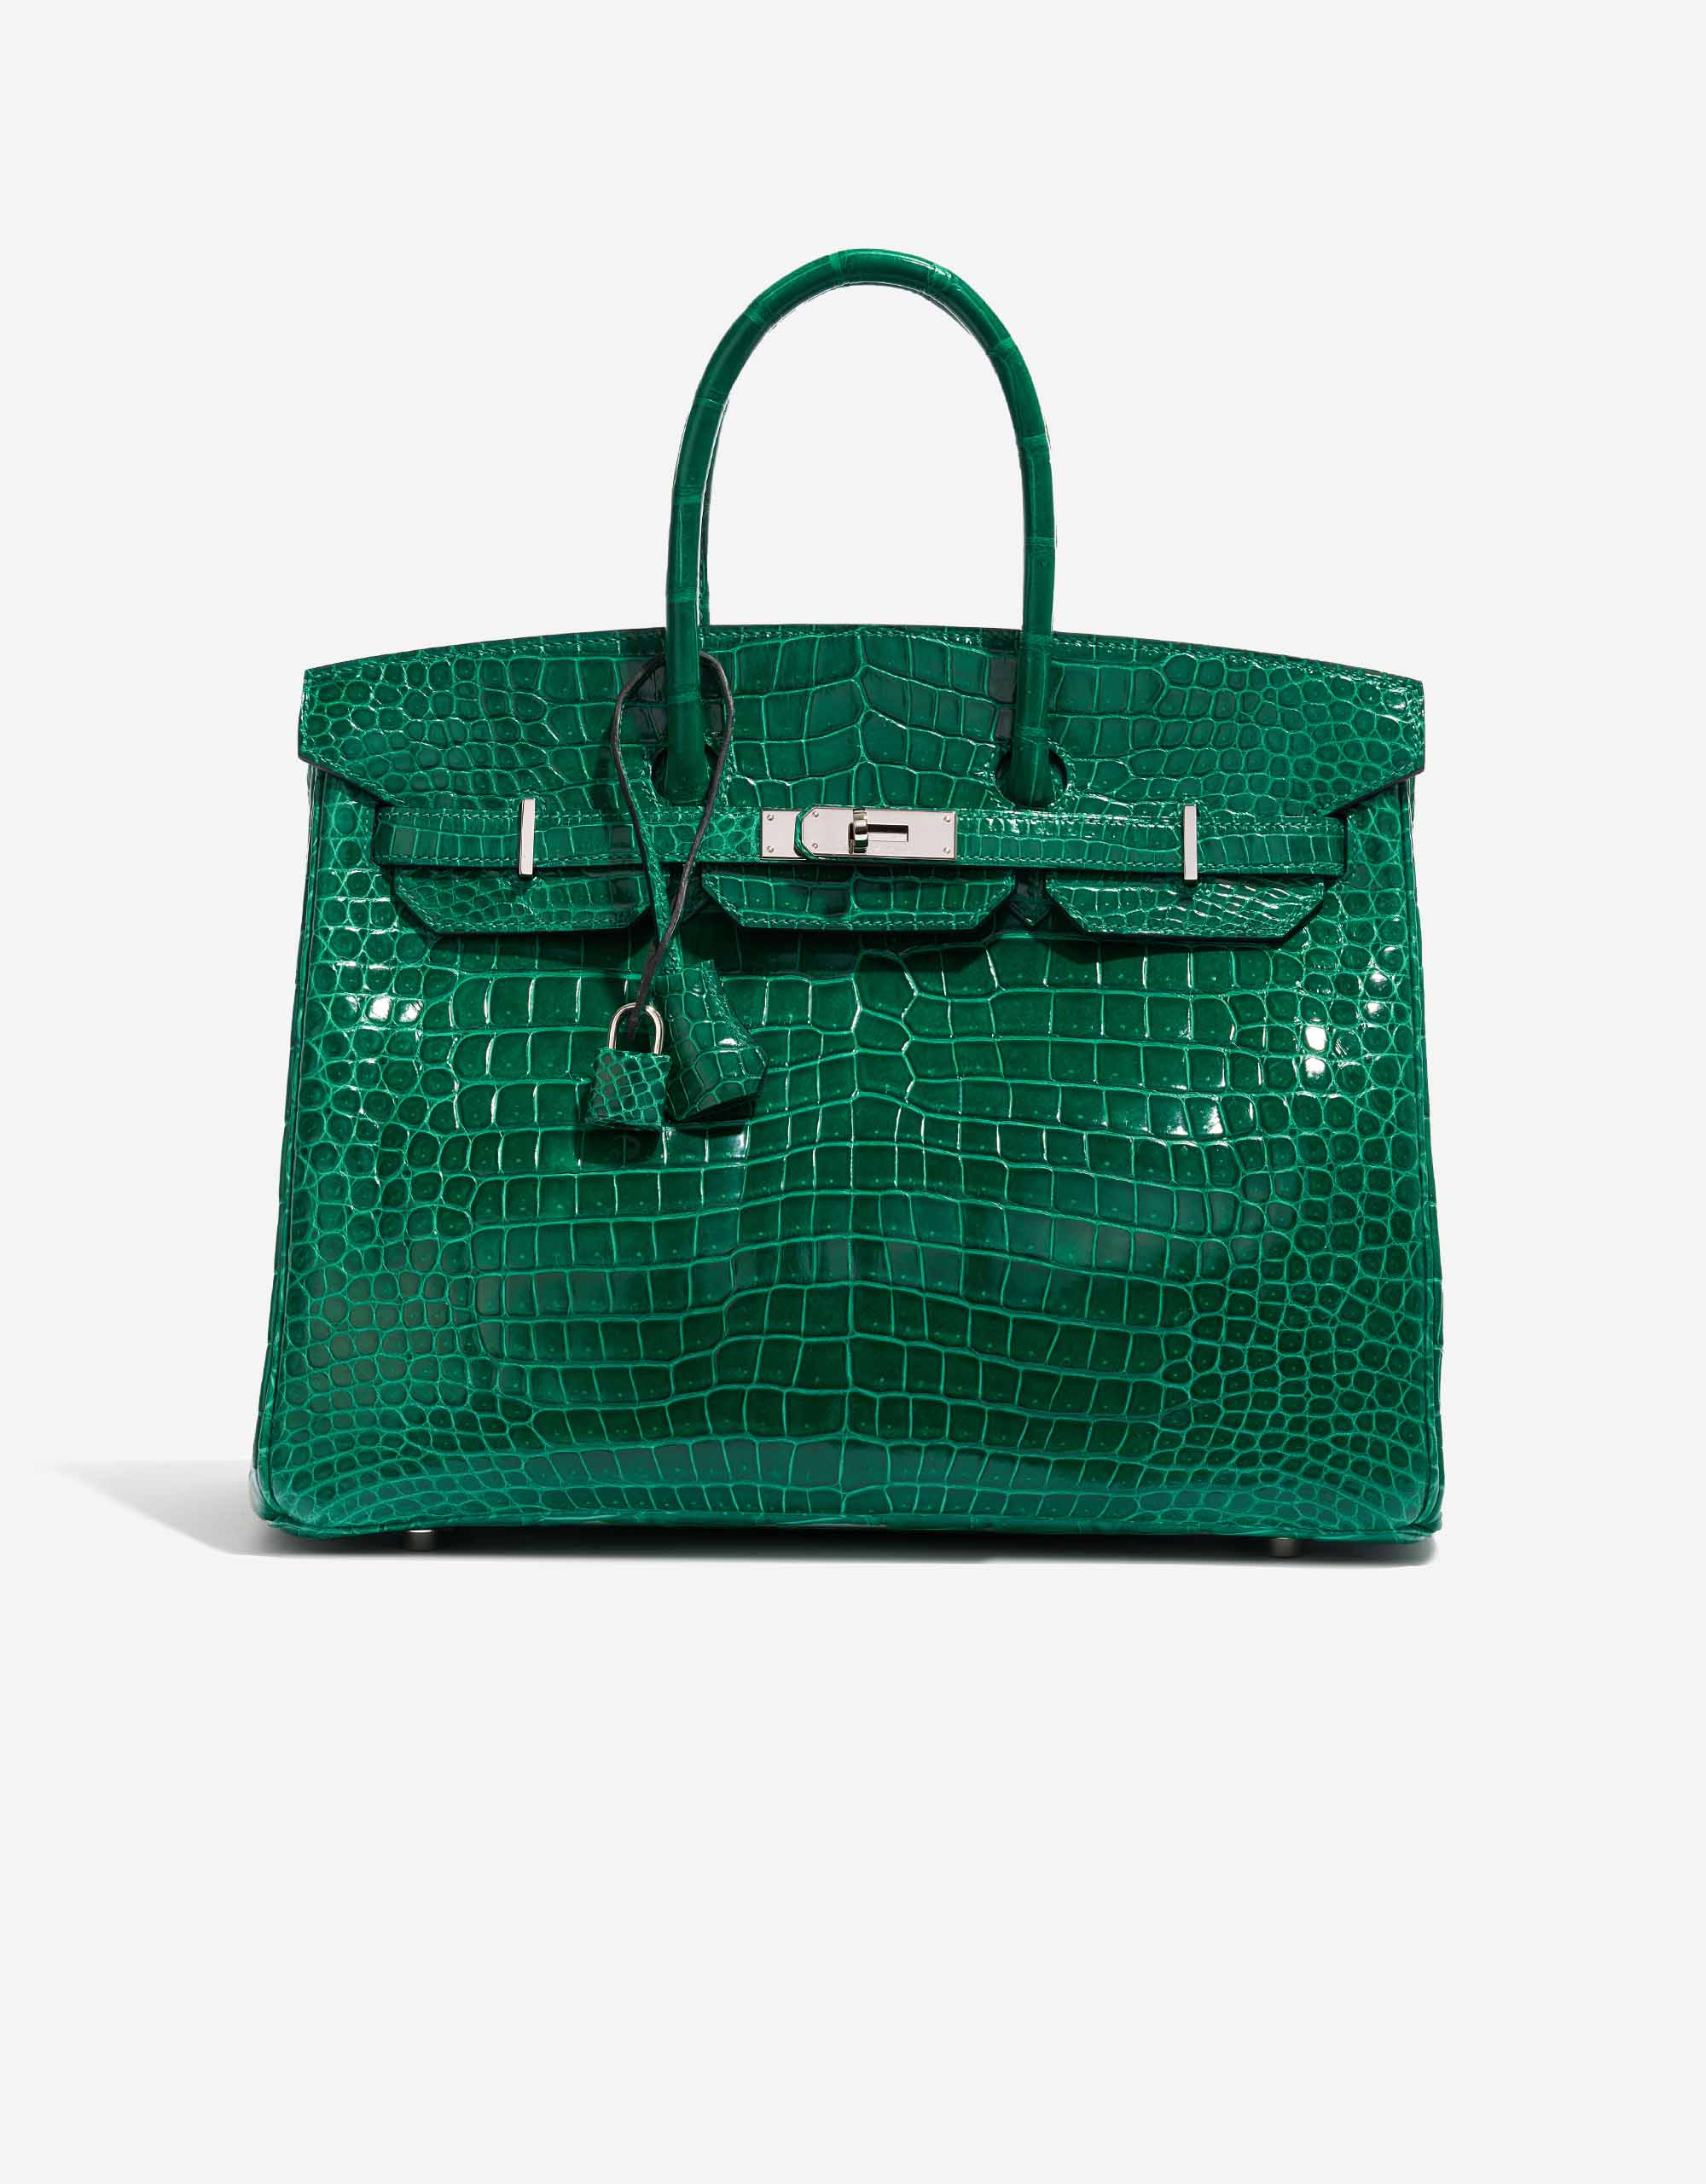 Hermès Birkin 35 Crocodile Porosus Vert Emeraude | SACLÀB